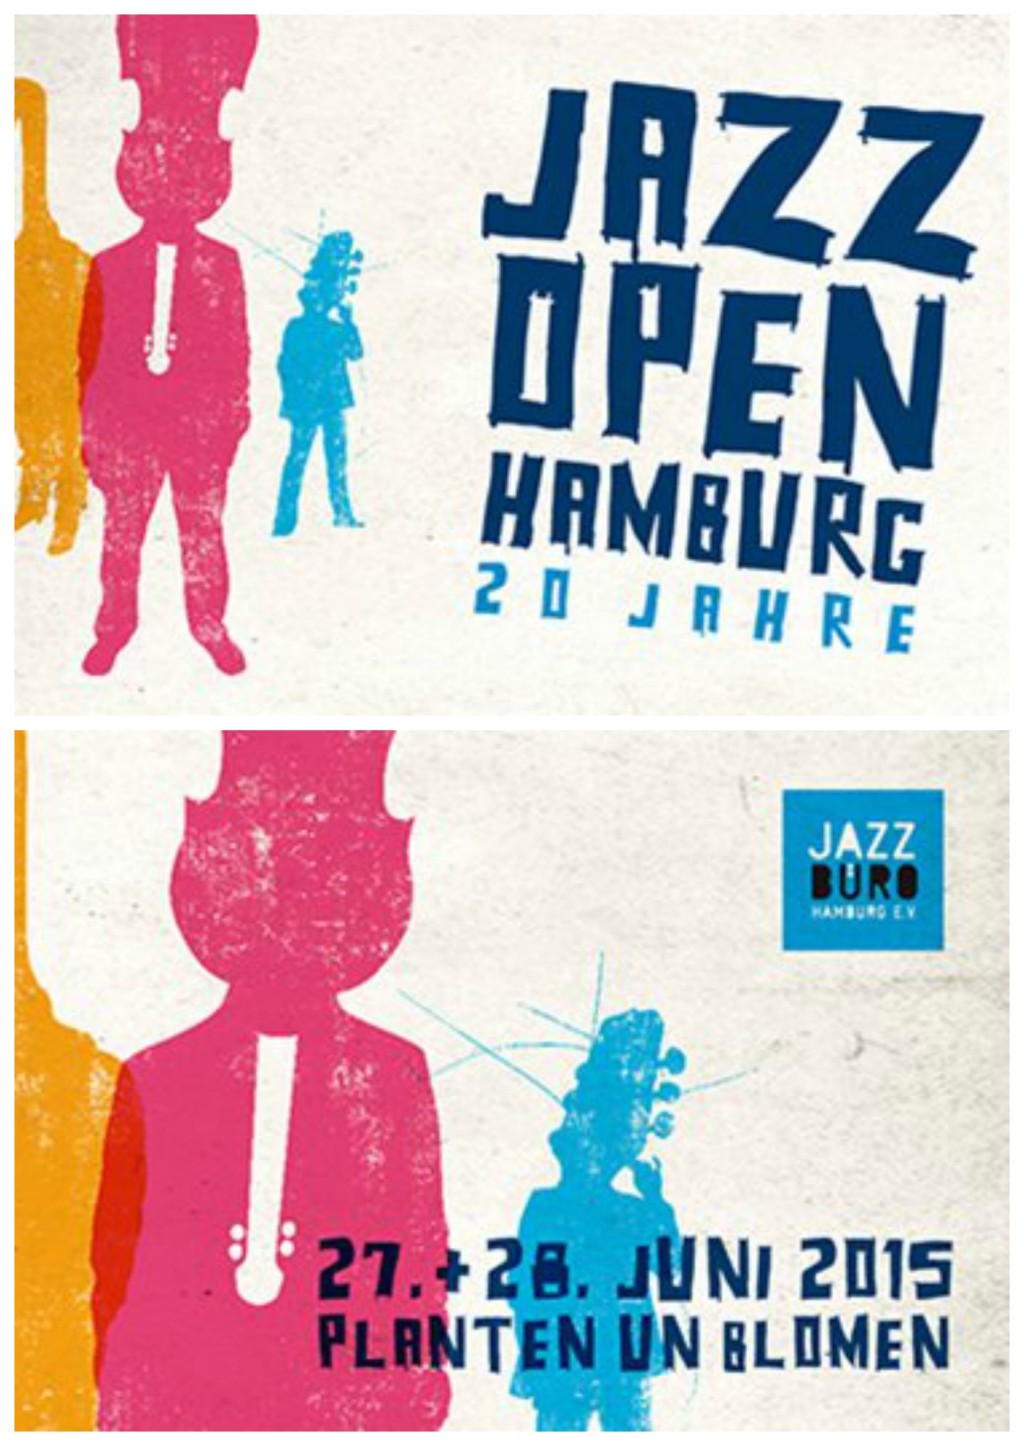 Beim Open Air Jazz Festival erwartet euch zwei Tage lang knackiger Jazz mitten in der Stadt! Der Musikpavillon in Planten un Blomen verwandelt sich zur Bühne für aktuelle Strömungen im Jazz. Hier erlebt ihr Hamburger Musiker und musikalische Gäste!